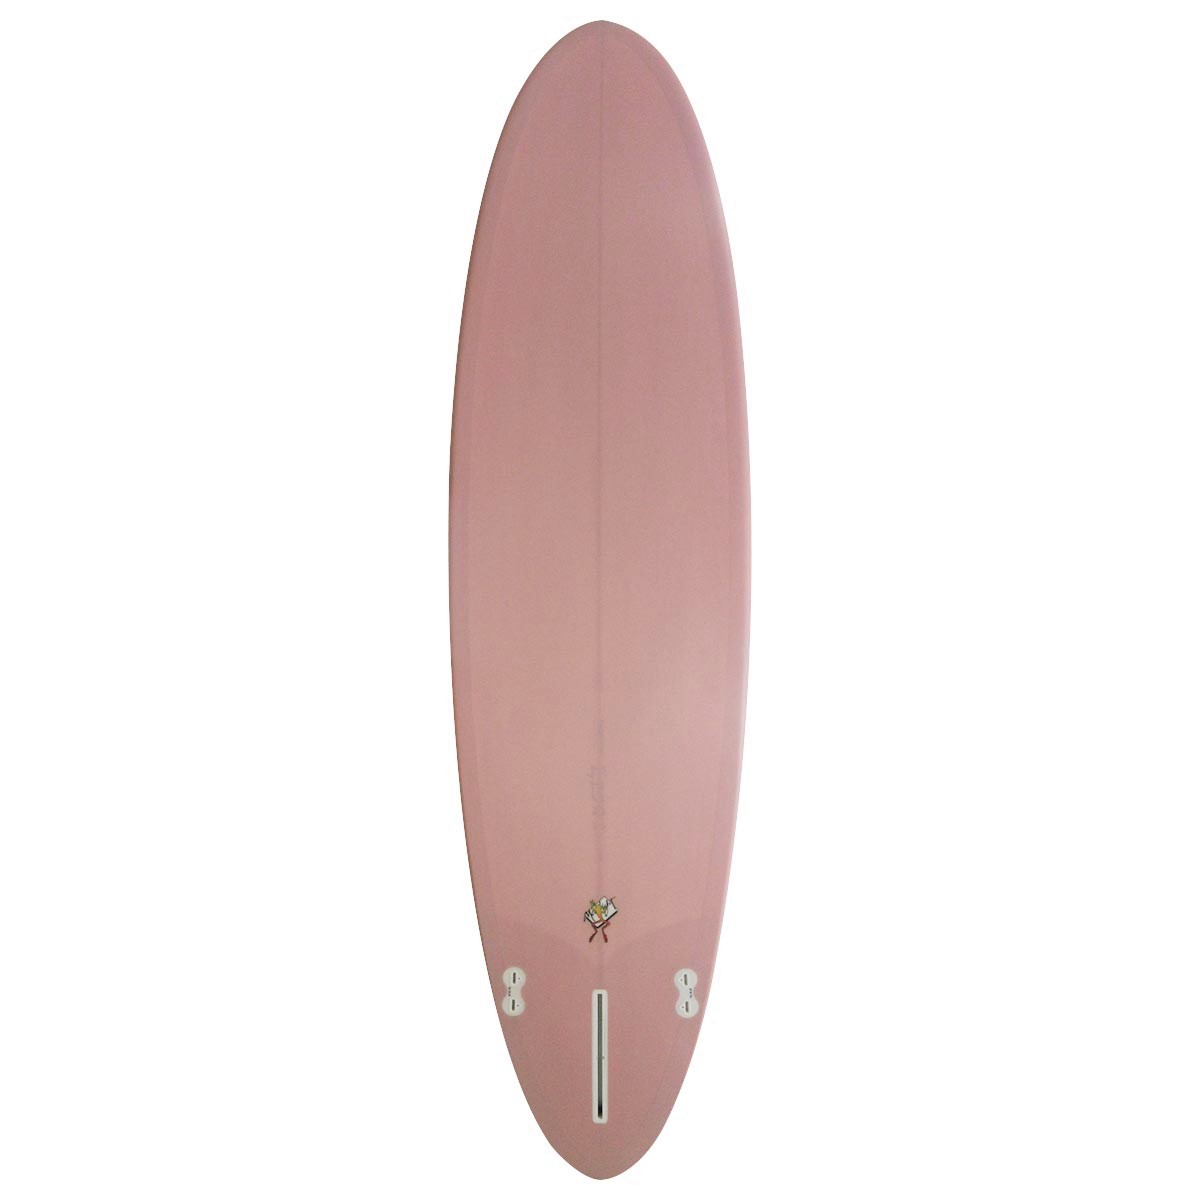 Gary Hanel Surfboards : Egg 2+1